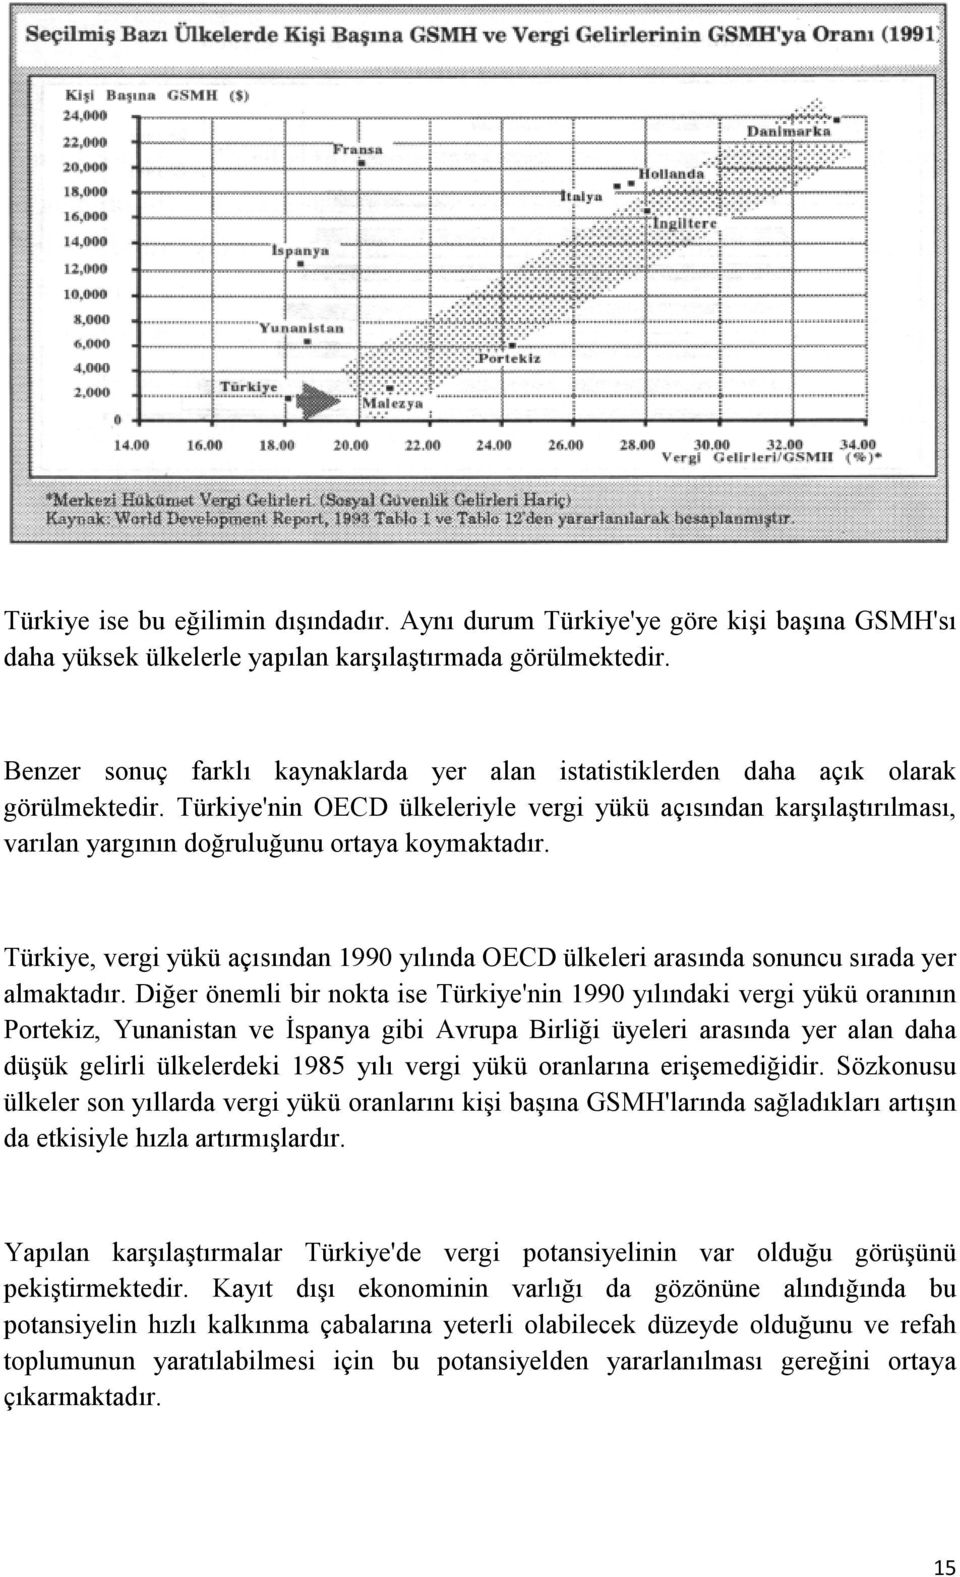 Türkiye'nin OECD ülkeleriyle vergi yükü açısından karşılaştırılması, varılan yargının doğruluğunu ortaya koymaktadır.